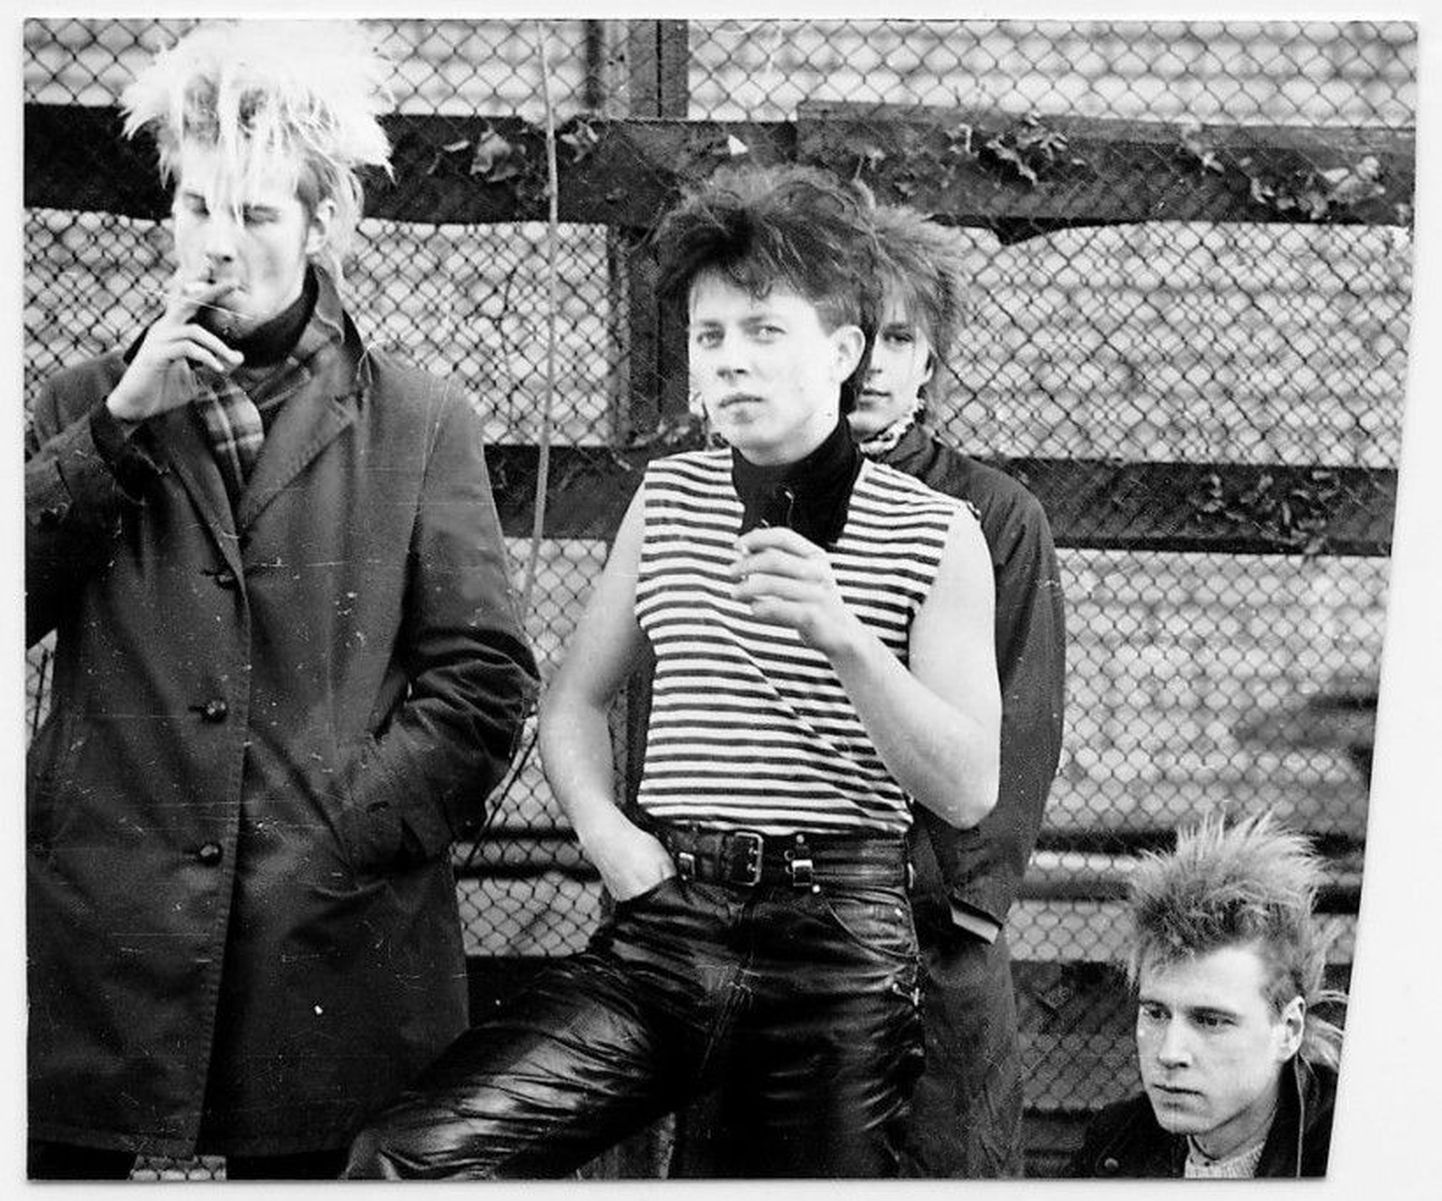 Cvlt Nation avaldas oma veebilehel pildigalerii Eesti punkkultuurist 1980. aastatel ja 90ndate alguses. Arva ära, kes on pildil? (Punkar Tõnu Trubetsky)